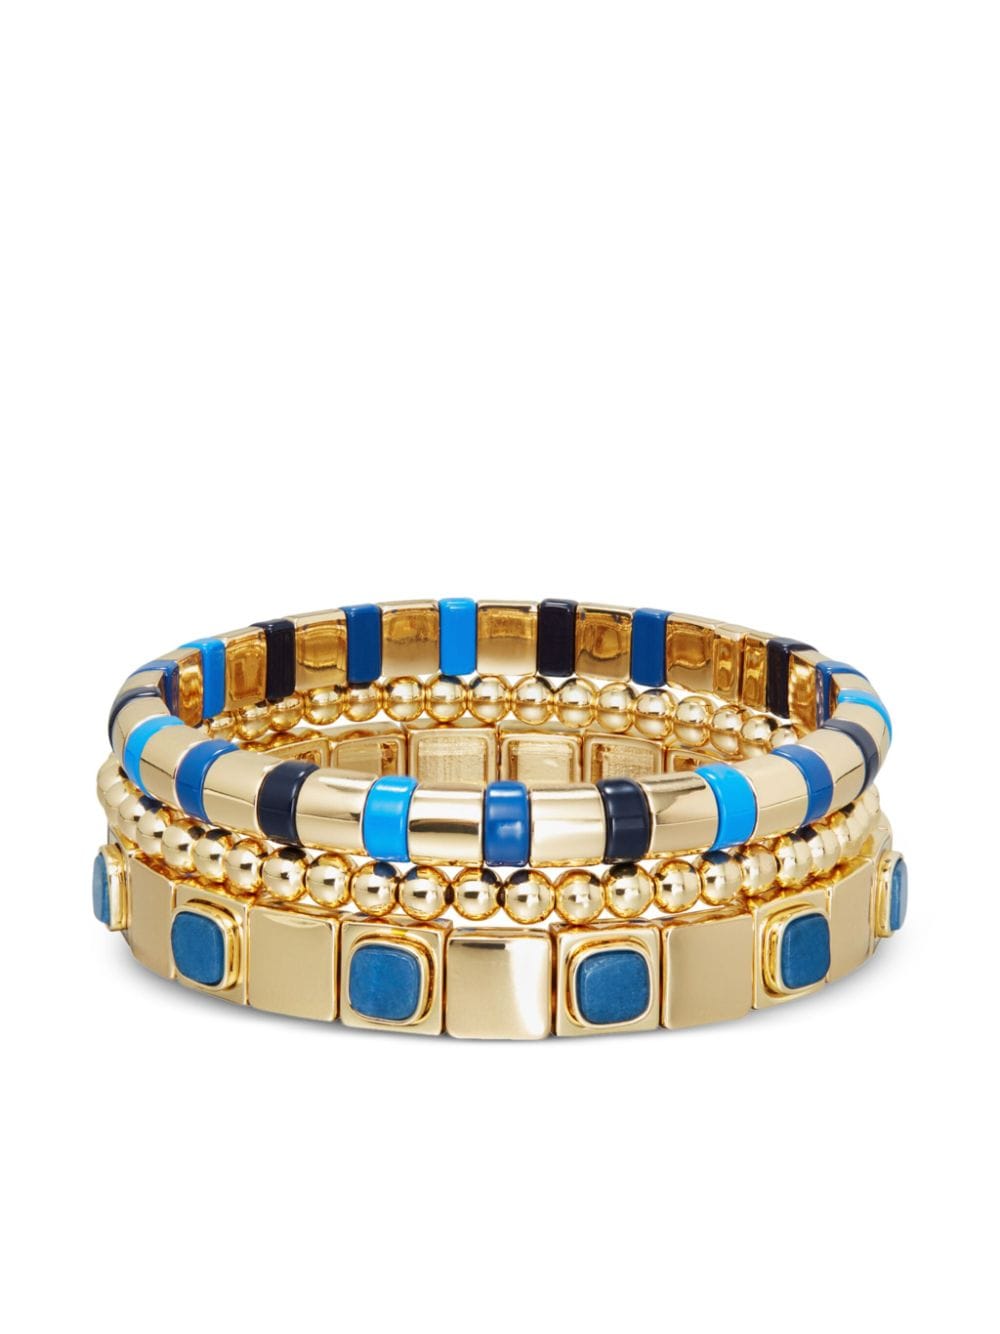 Roxanne Assoulin True Blue beaded bracelets (set of three) - Gold von Roxanne Assoulin